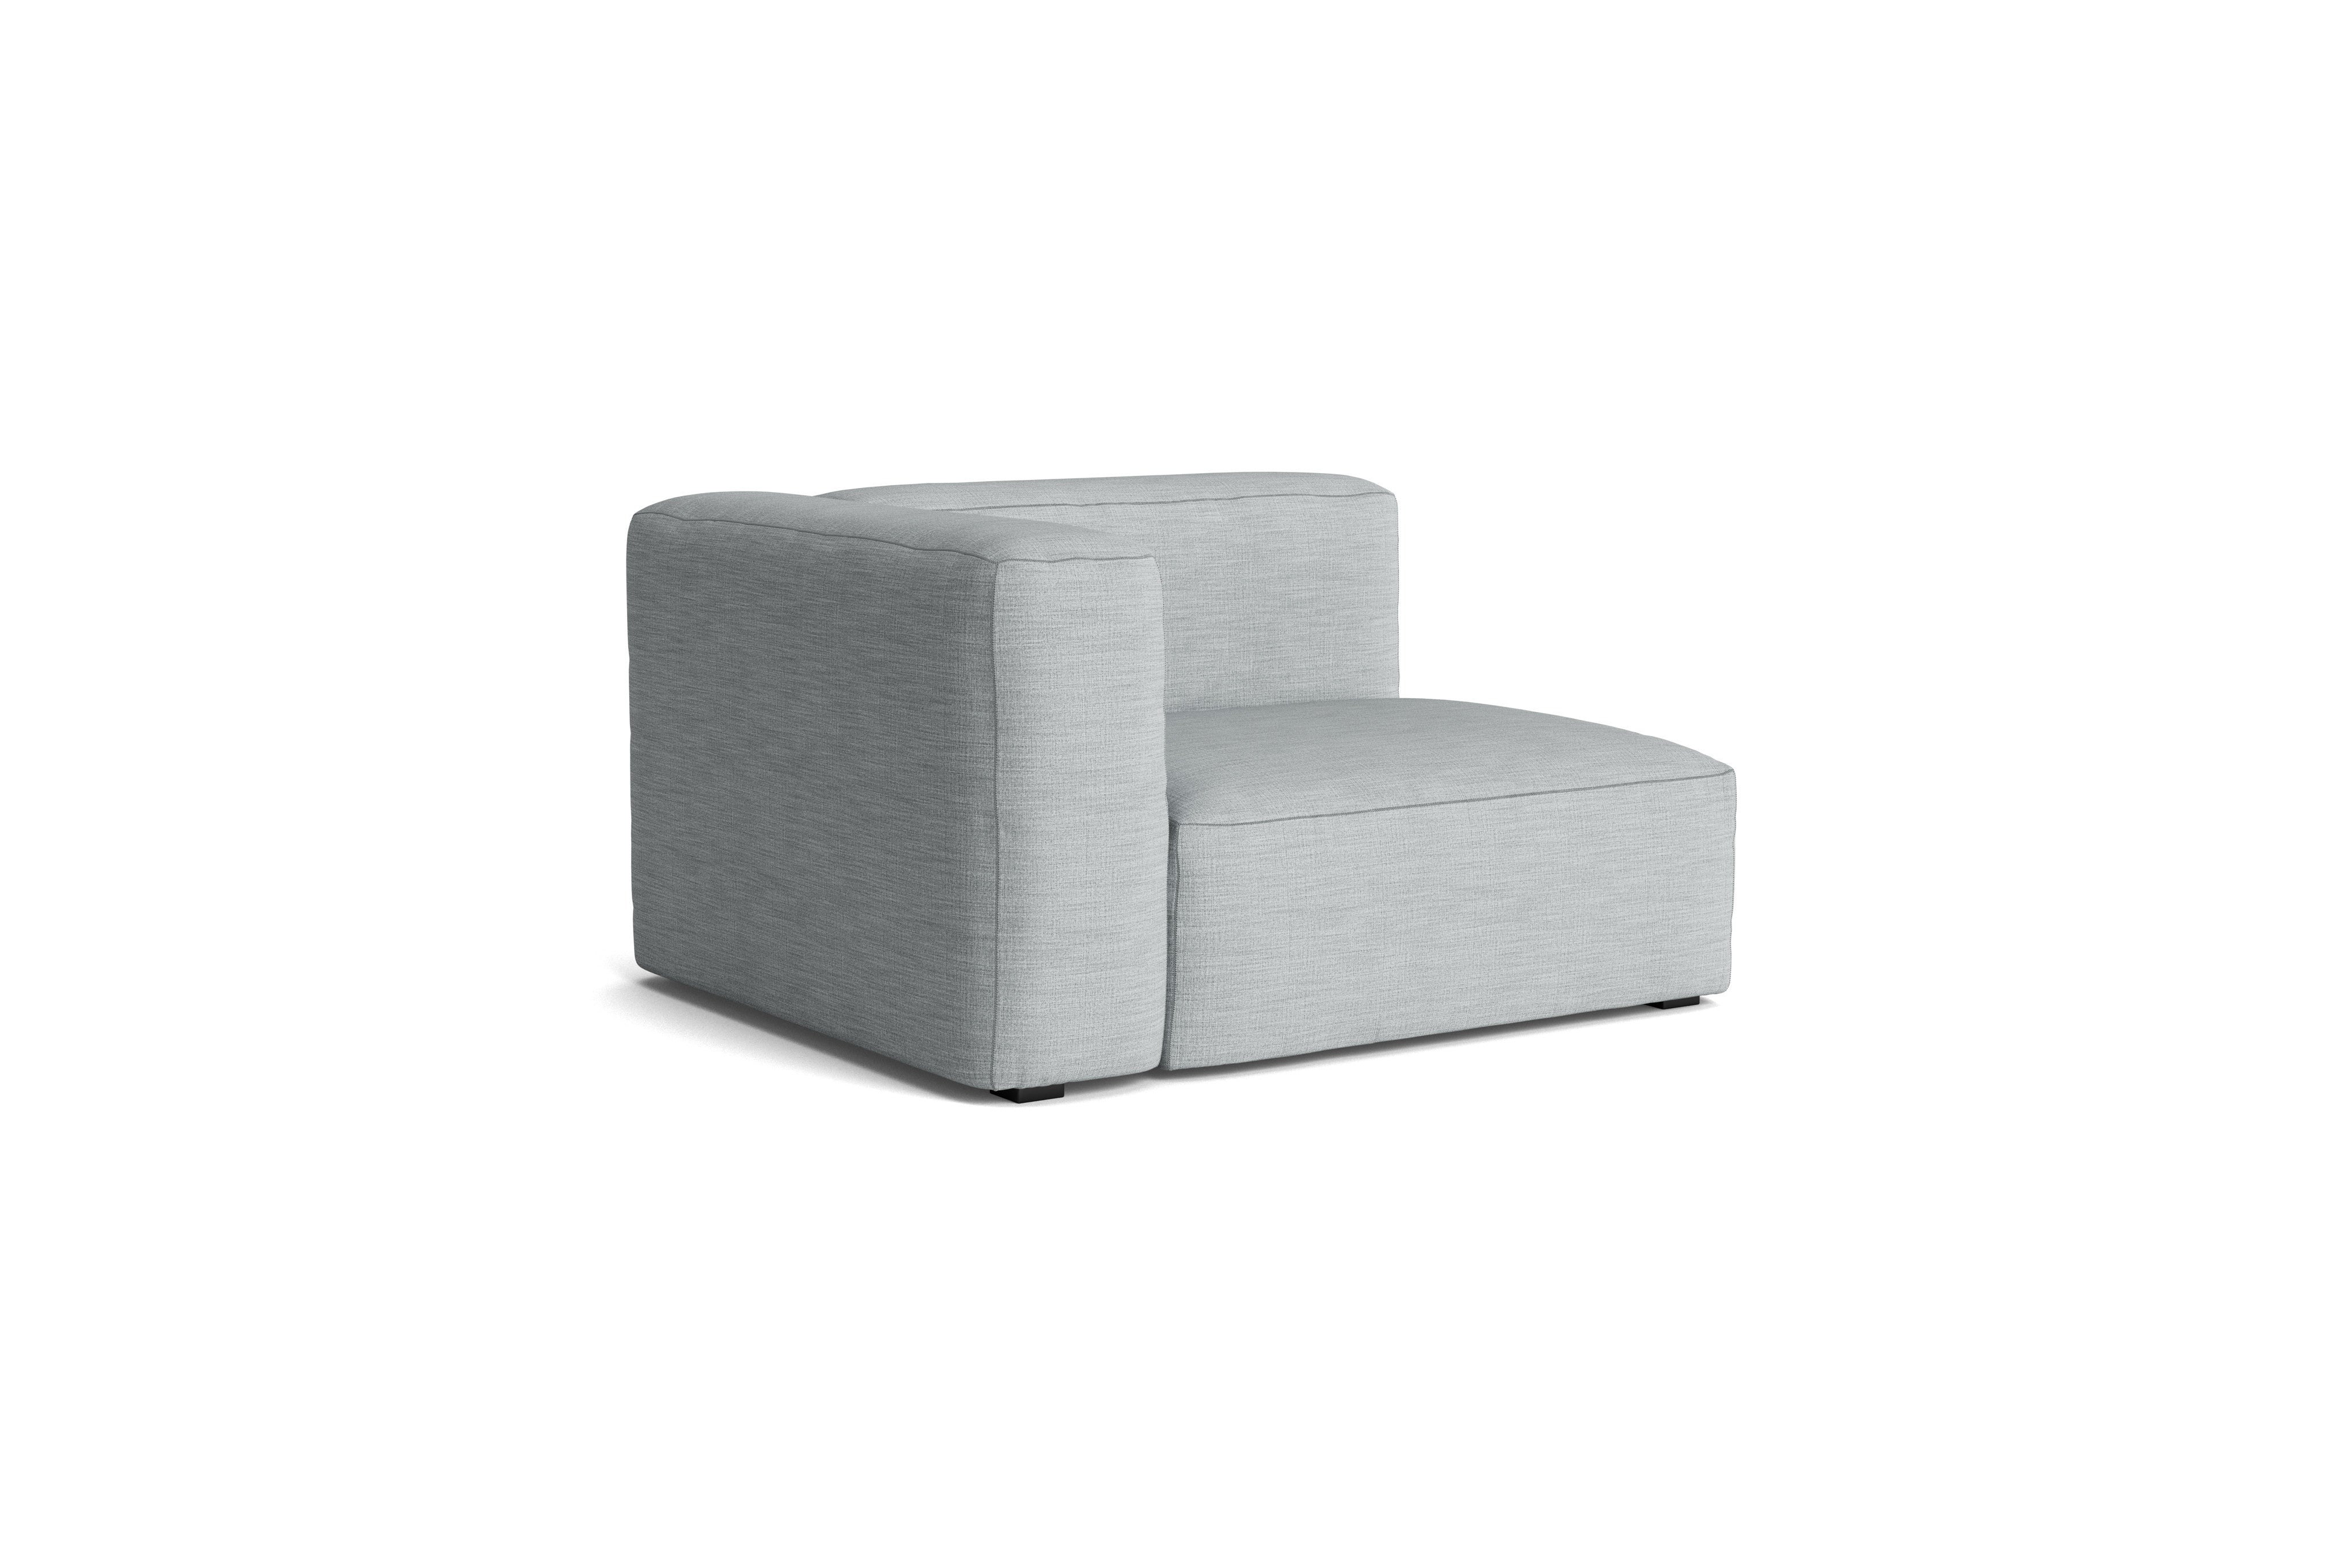 HAY Mags Soft Sofa - Individual Modules